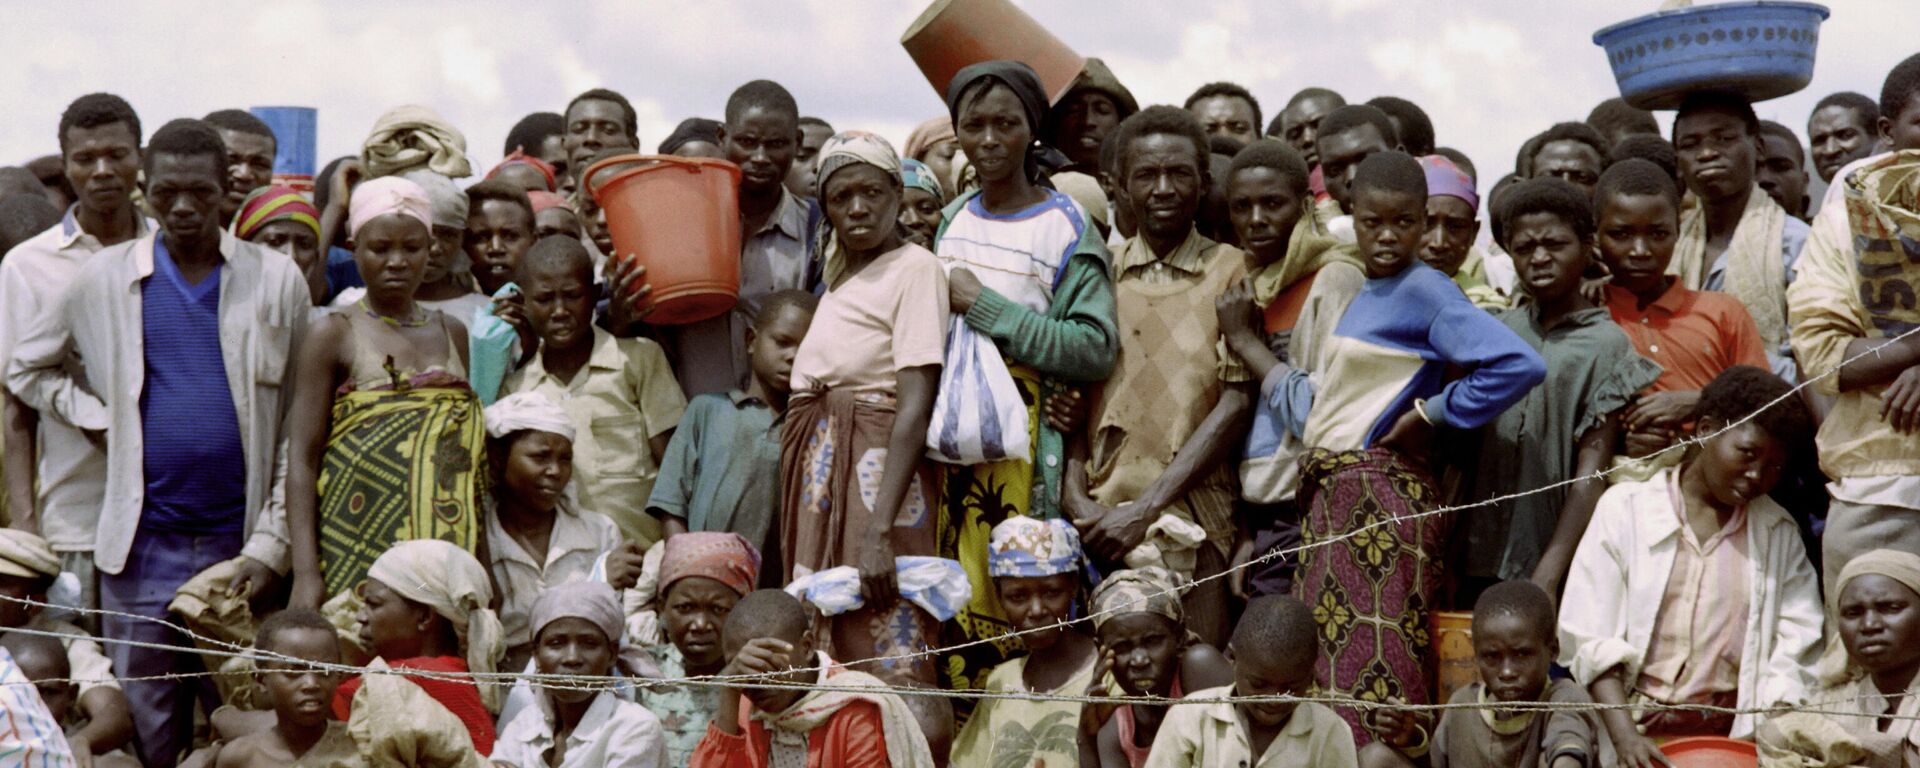 Refugiados de Ruanda (archivo) - Sputnik Mundo, 1920, 27.05.2021